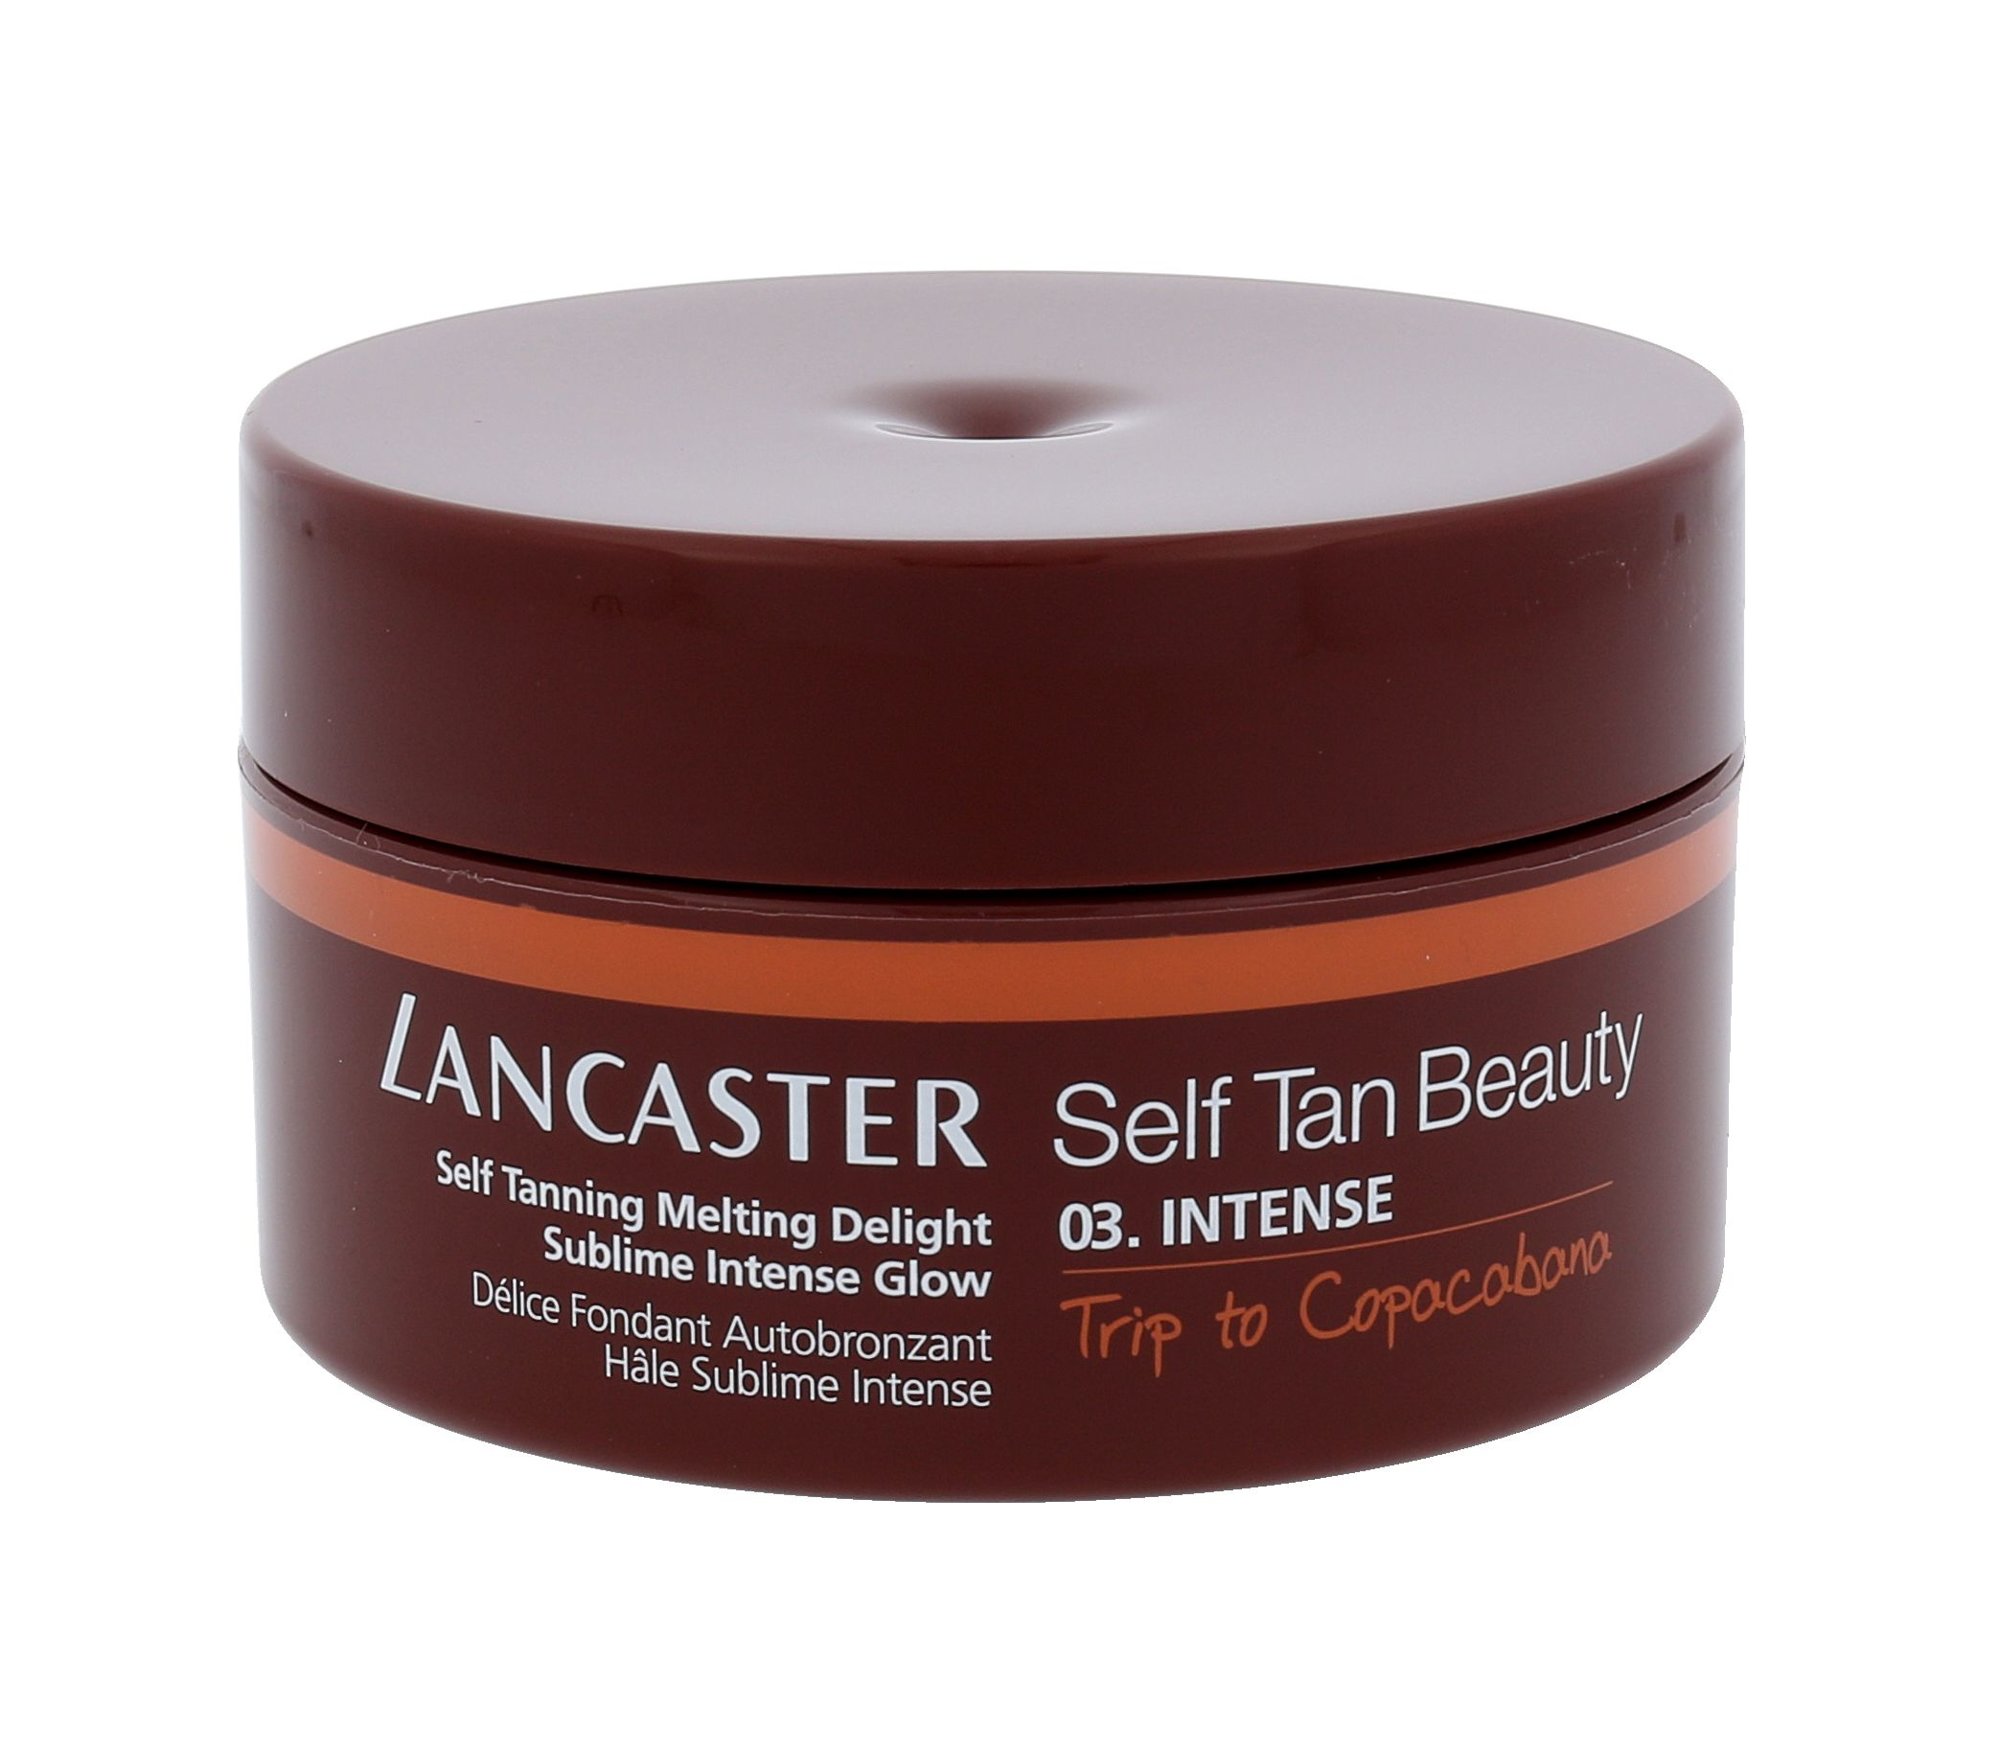 Lancaster Self Tan Beauty Self Tanning Cream savaiminio įdegio kremas